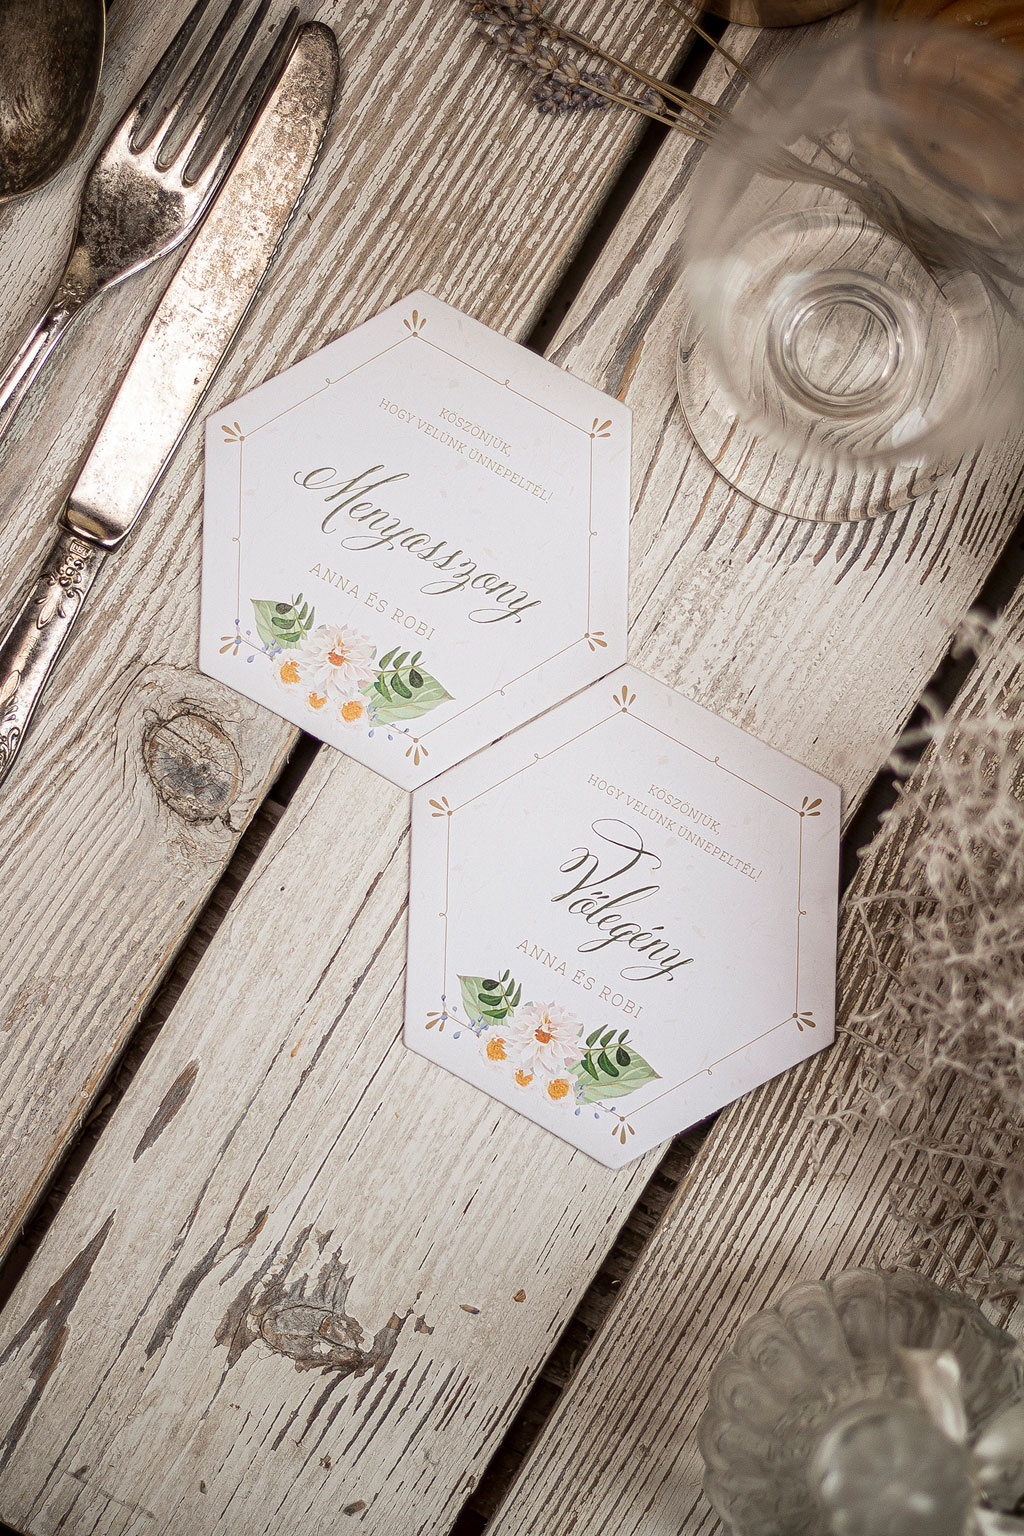 Új ötletek alapján tervezett esküvői kiegészítők: formára vágott menü- és ültetőkártyák, poháralátétek, aranyozva, kézzel festve, prémium papírokon